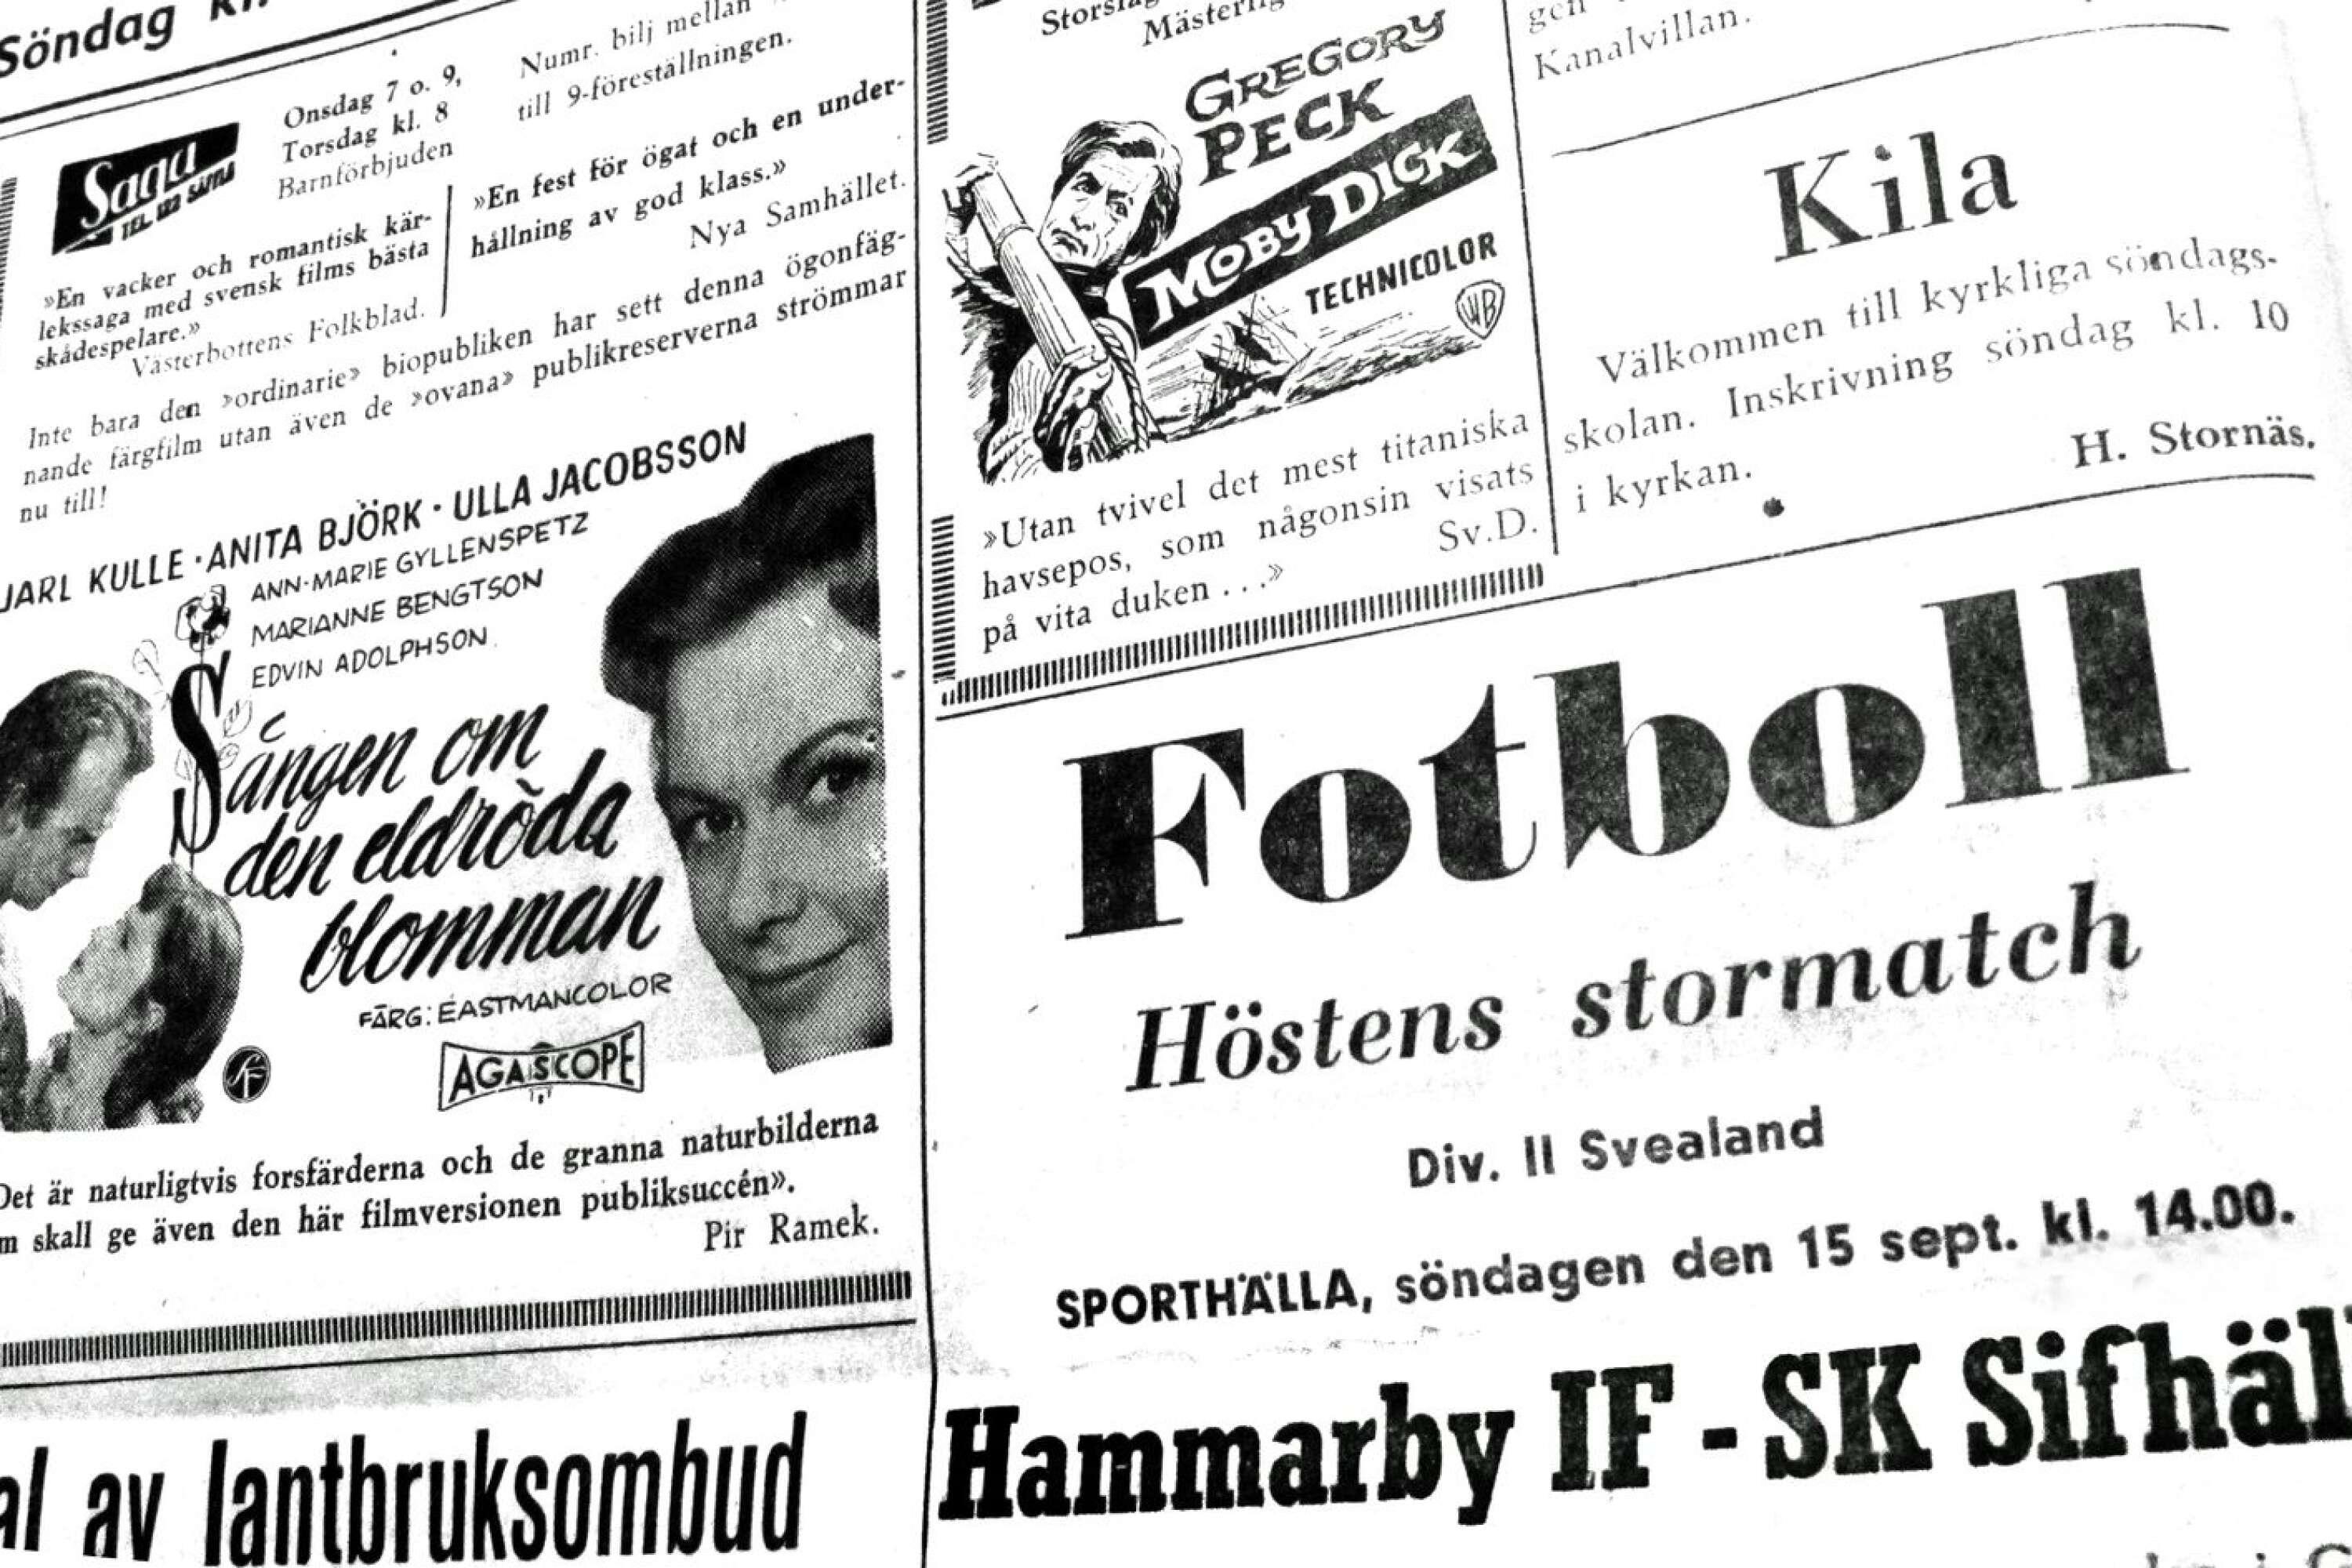  Hösten 1957 lockade Saga med filmen Sången om den eldröda blomman. Samtidigt var det annat som också lockade. Fotboll mellan Sifhälla och Hammarby. Den matchen slutade förresten 0-0. 